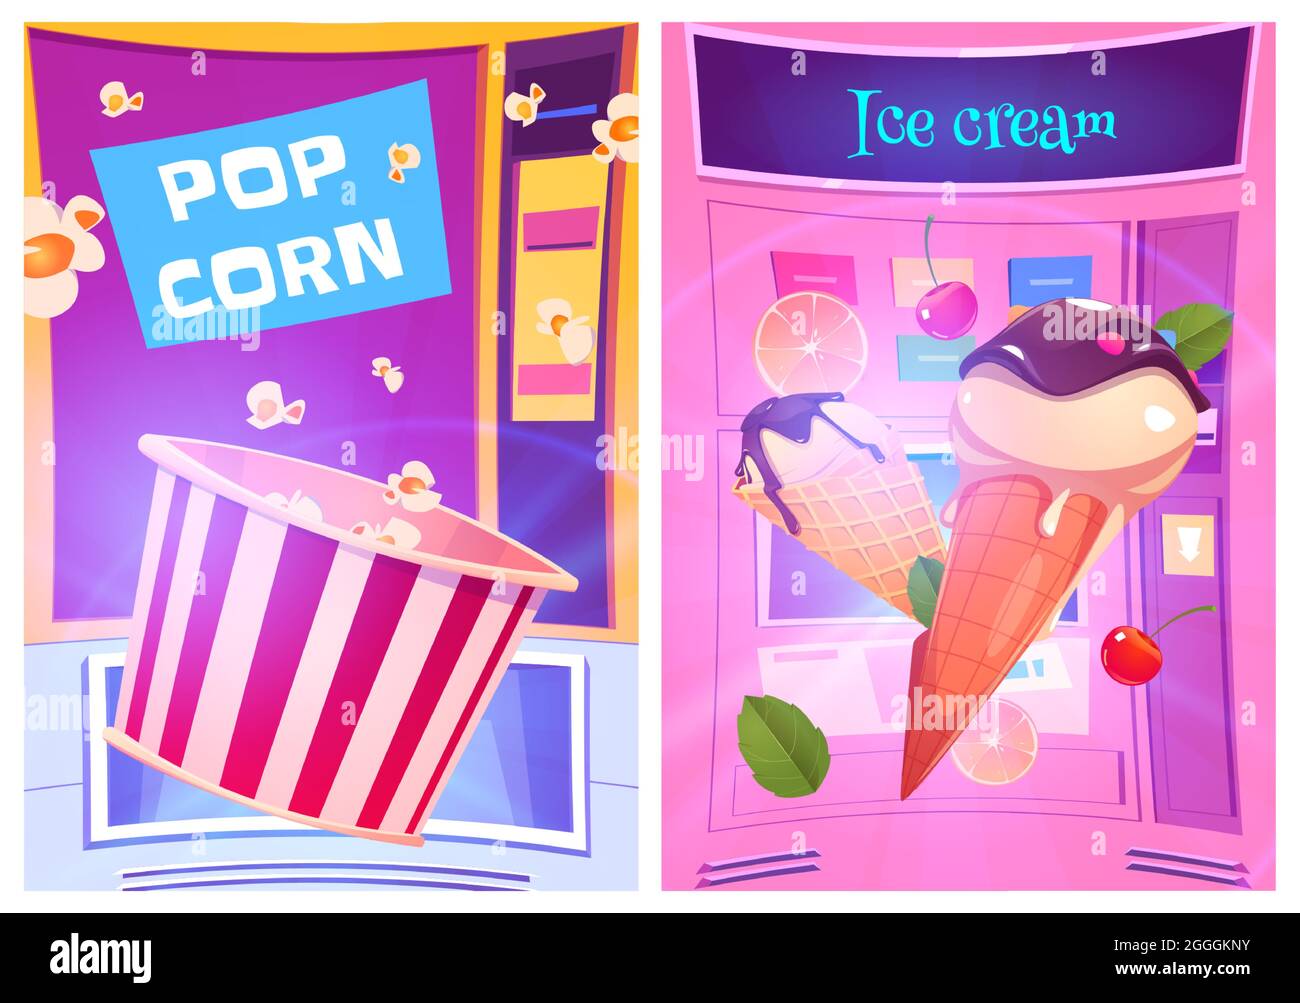 Pop corn e gelati snack presso distributori automatici cartoon ad poster.  Negozio di dolci dolci, vendita al dettaglio di prodotti, stand  automatizzati fornitore con slot e luminoso display digitale, illustrazione  Vector Immagine